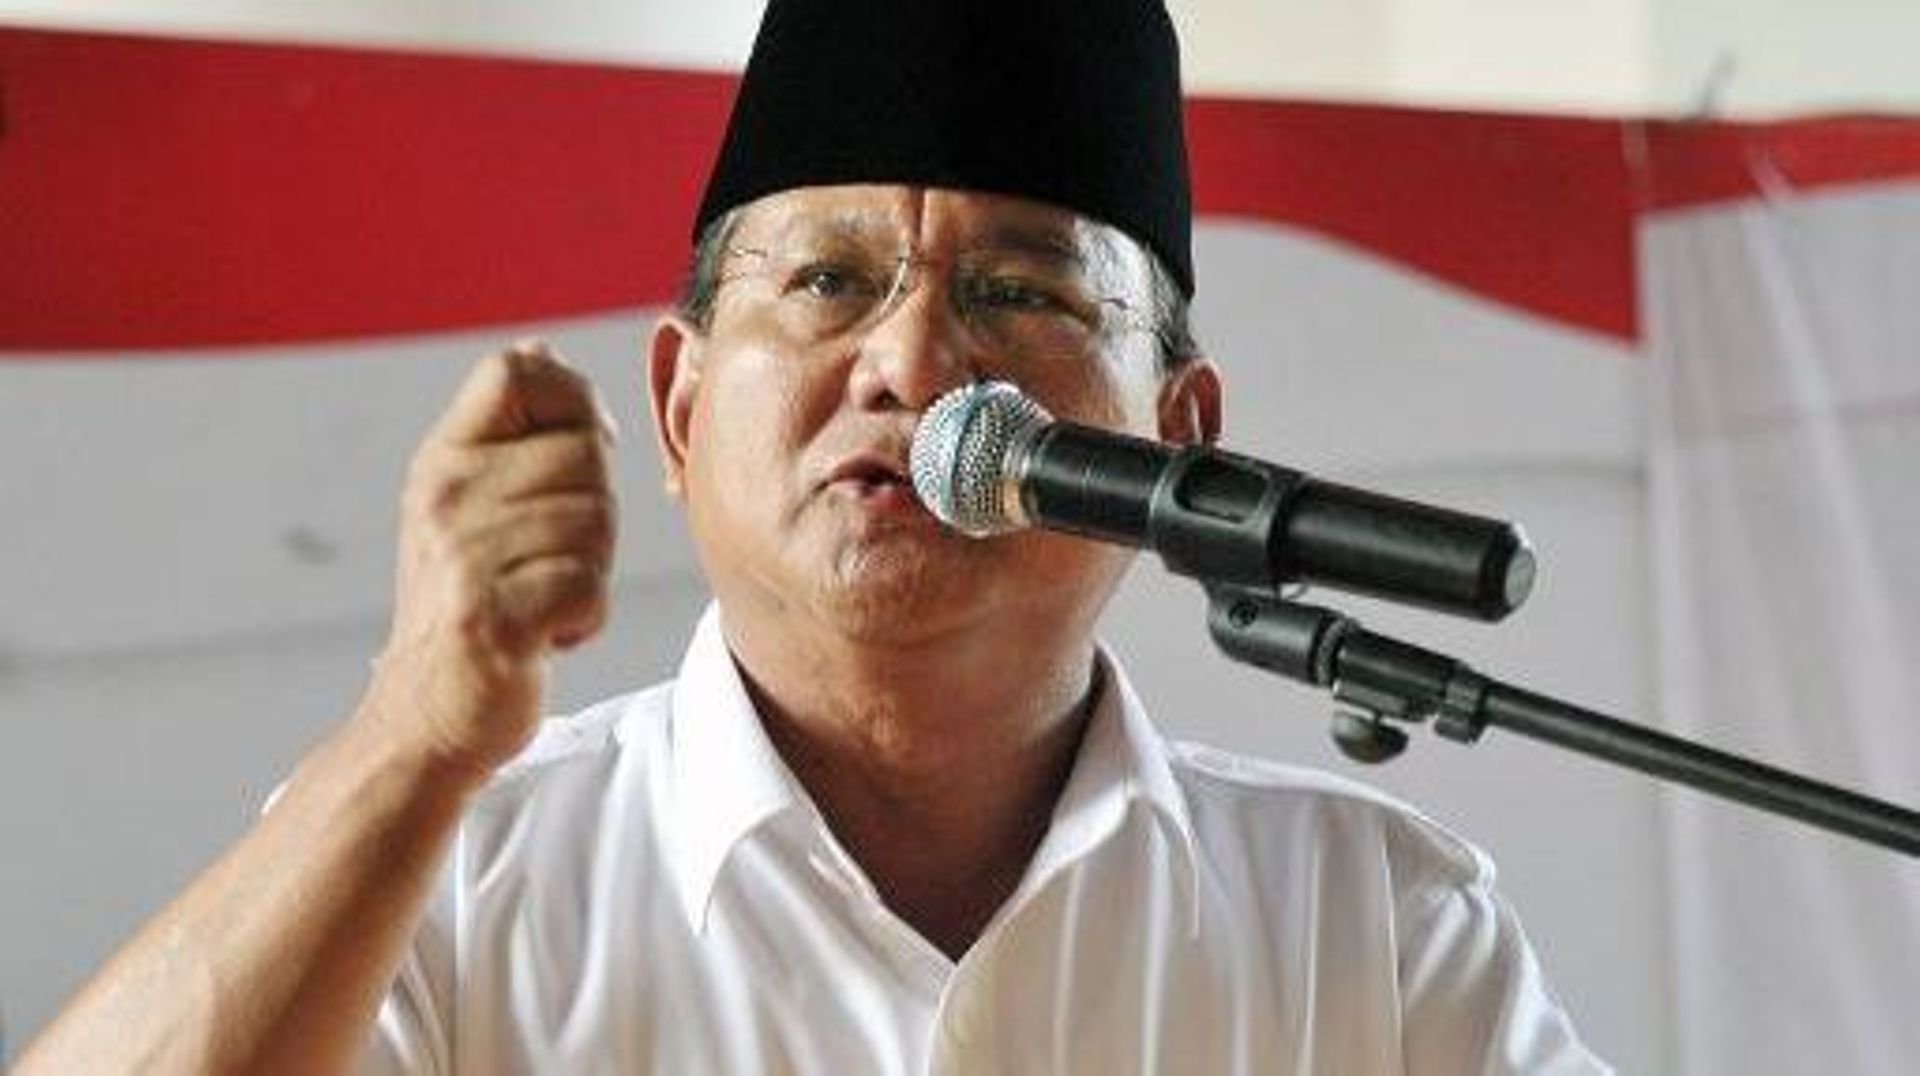 Le candidat à la présidentielle en Indonésie, Prabowo Subianto, le 22 juillet 2014 à Jakarta